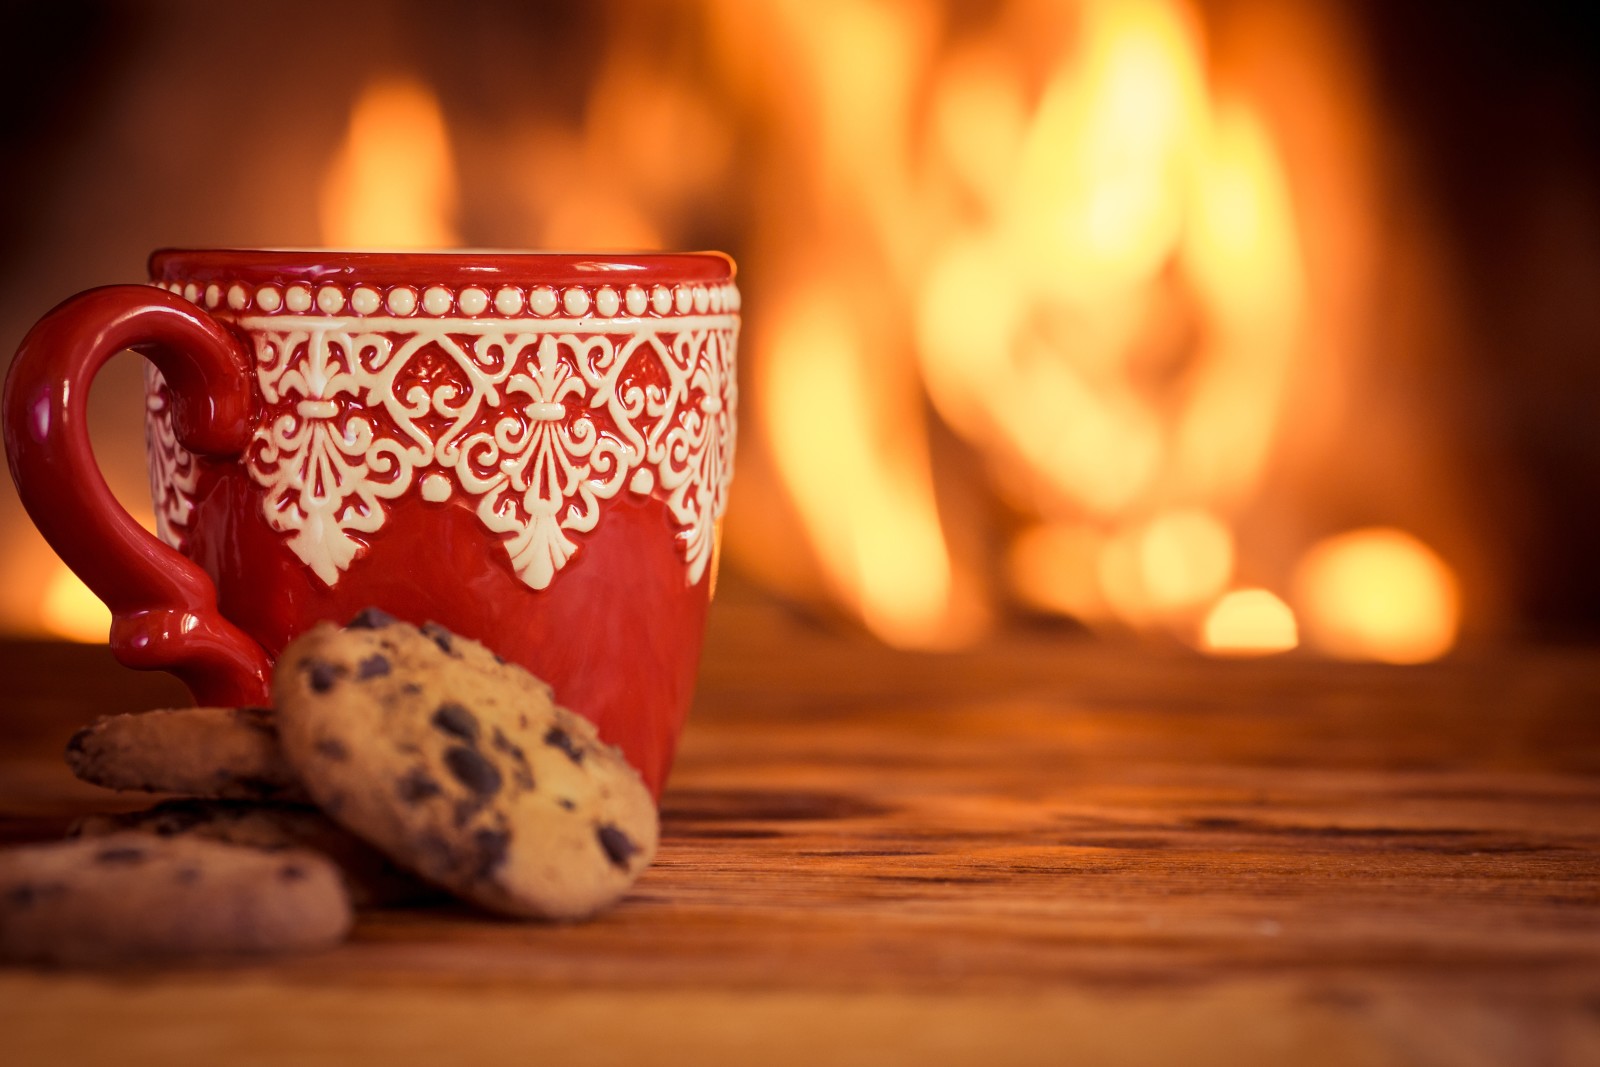 冬季, 饼干, 可爱, 咖啡, 热, 火, 杯子, 壁炉